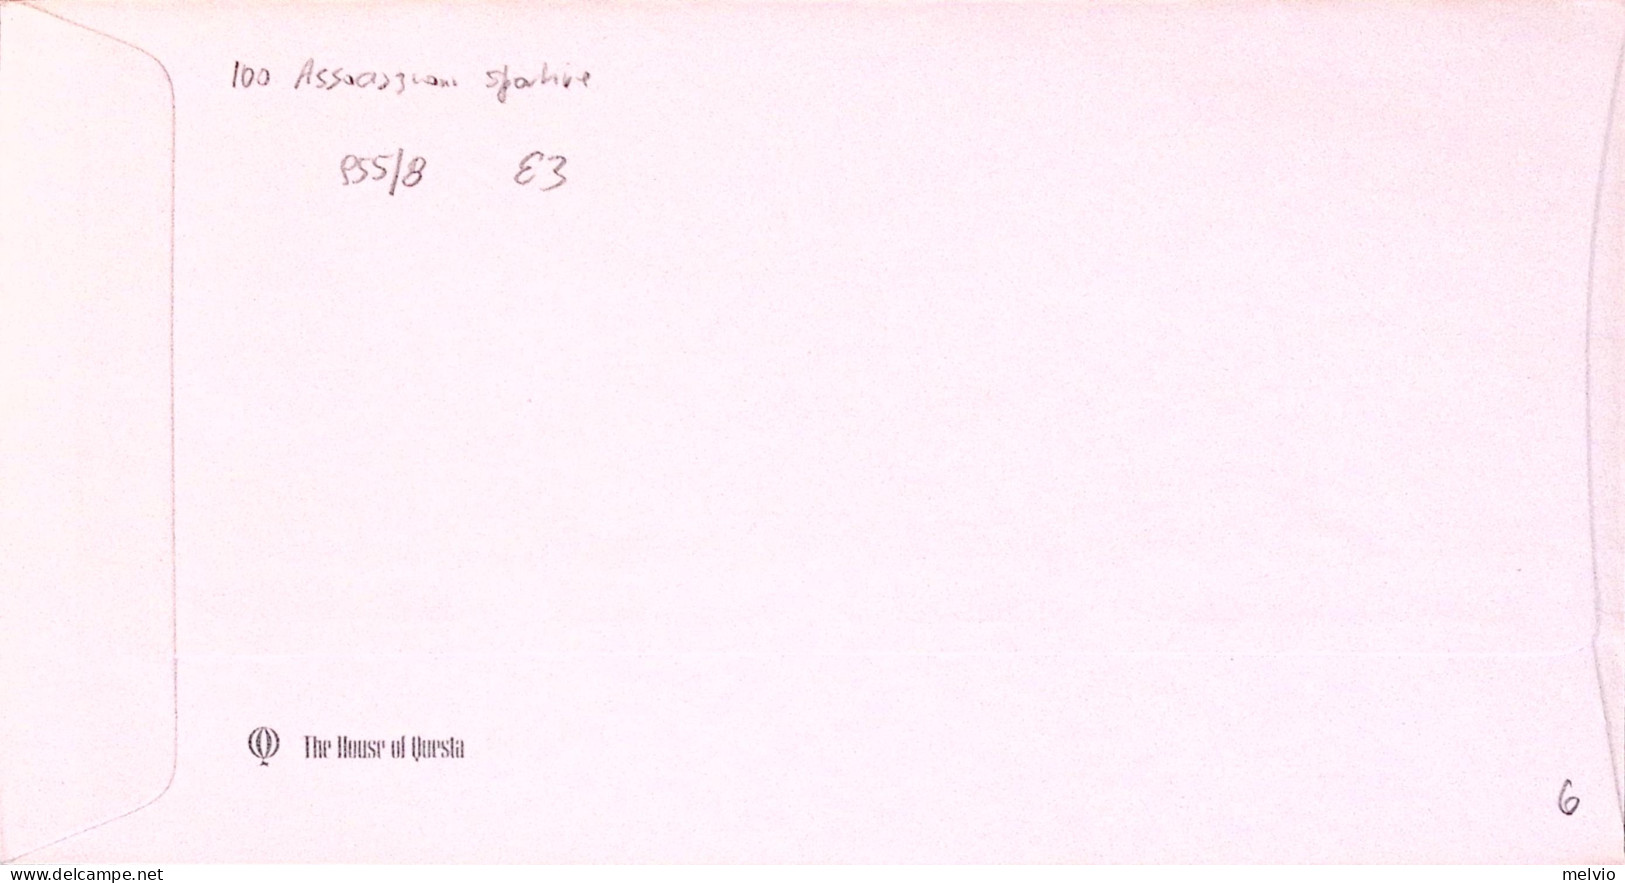 1980-GRAN BRETAGNA GREAT BRITAIN Associazioni Sportive Serie Cpl. (955/8) Fdc - Lettres & Documents